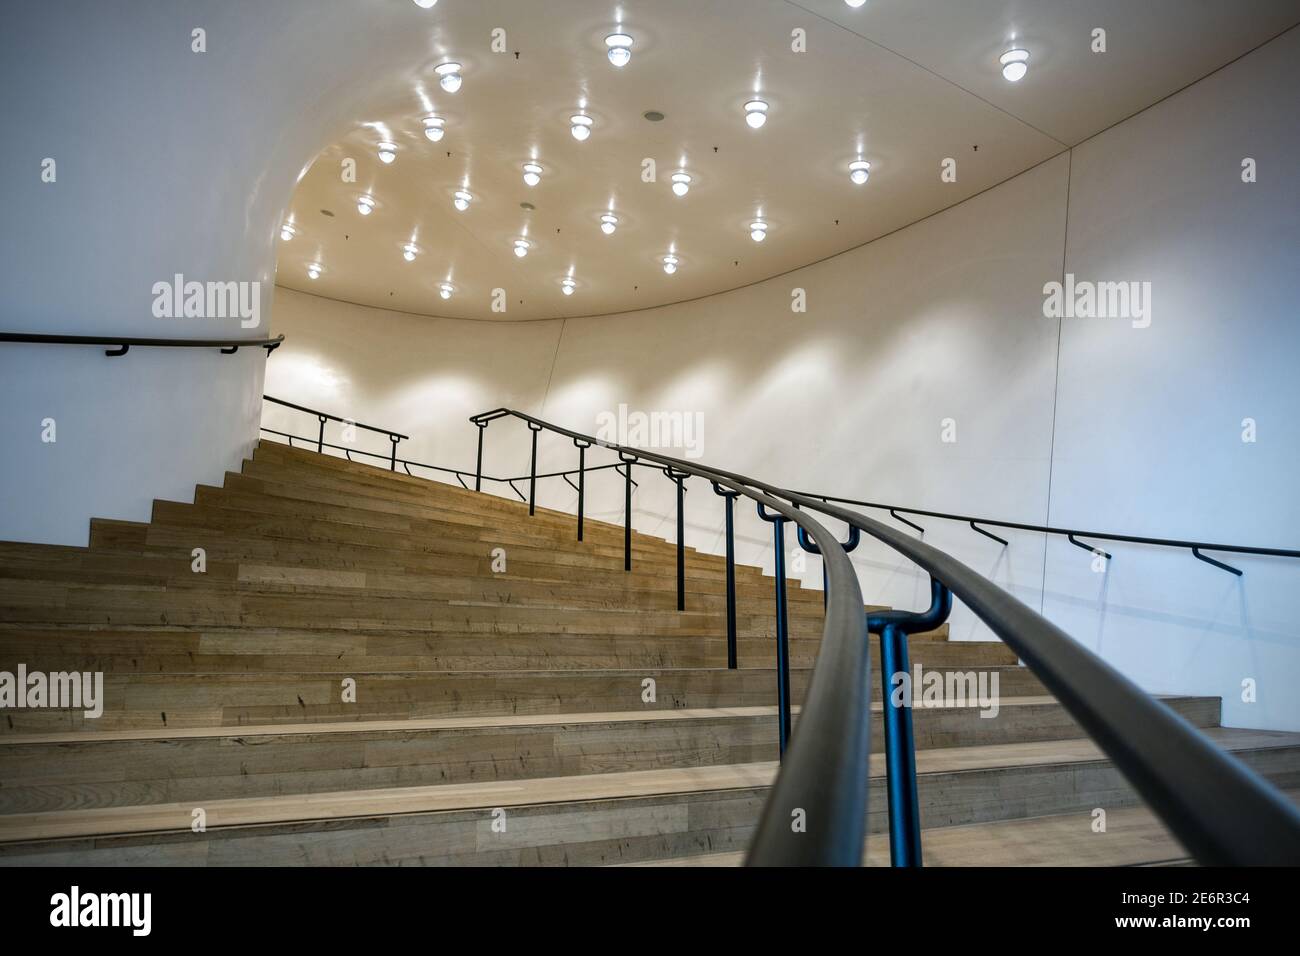 Treppengestaltung in der Elbphilharmonie, einem Konzertsaal in der Hamburger HafenCity, auf der Elbhalbinsel Grasbrook Stockfoto